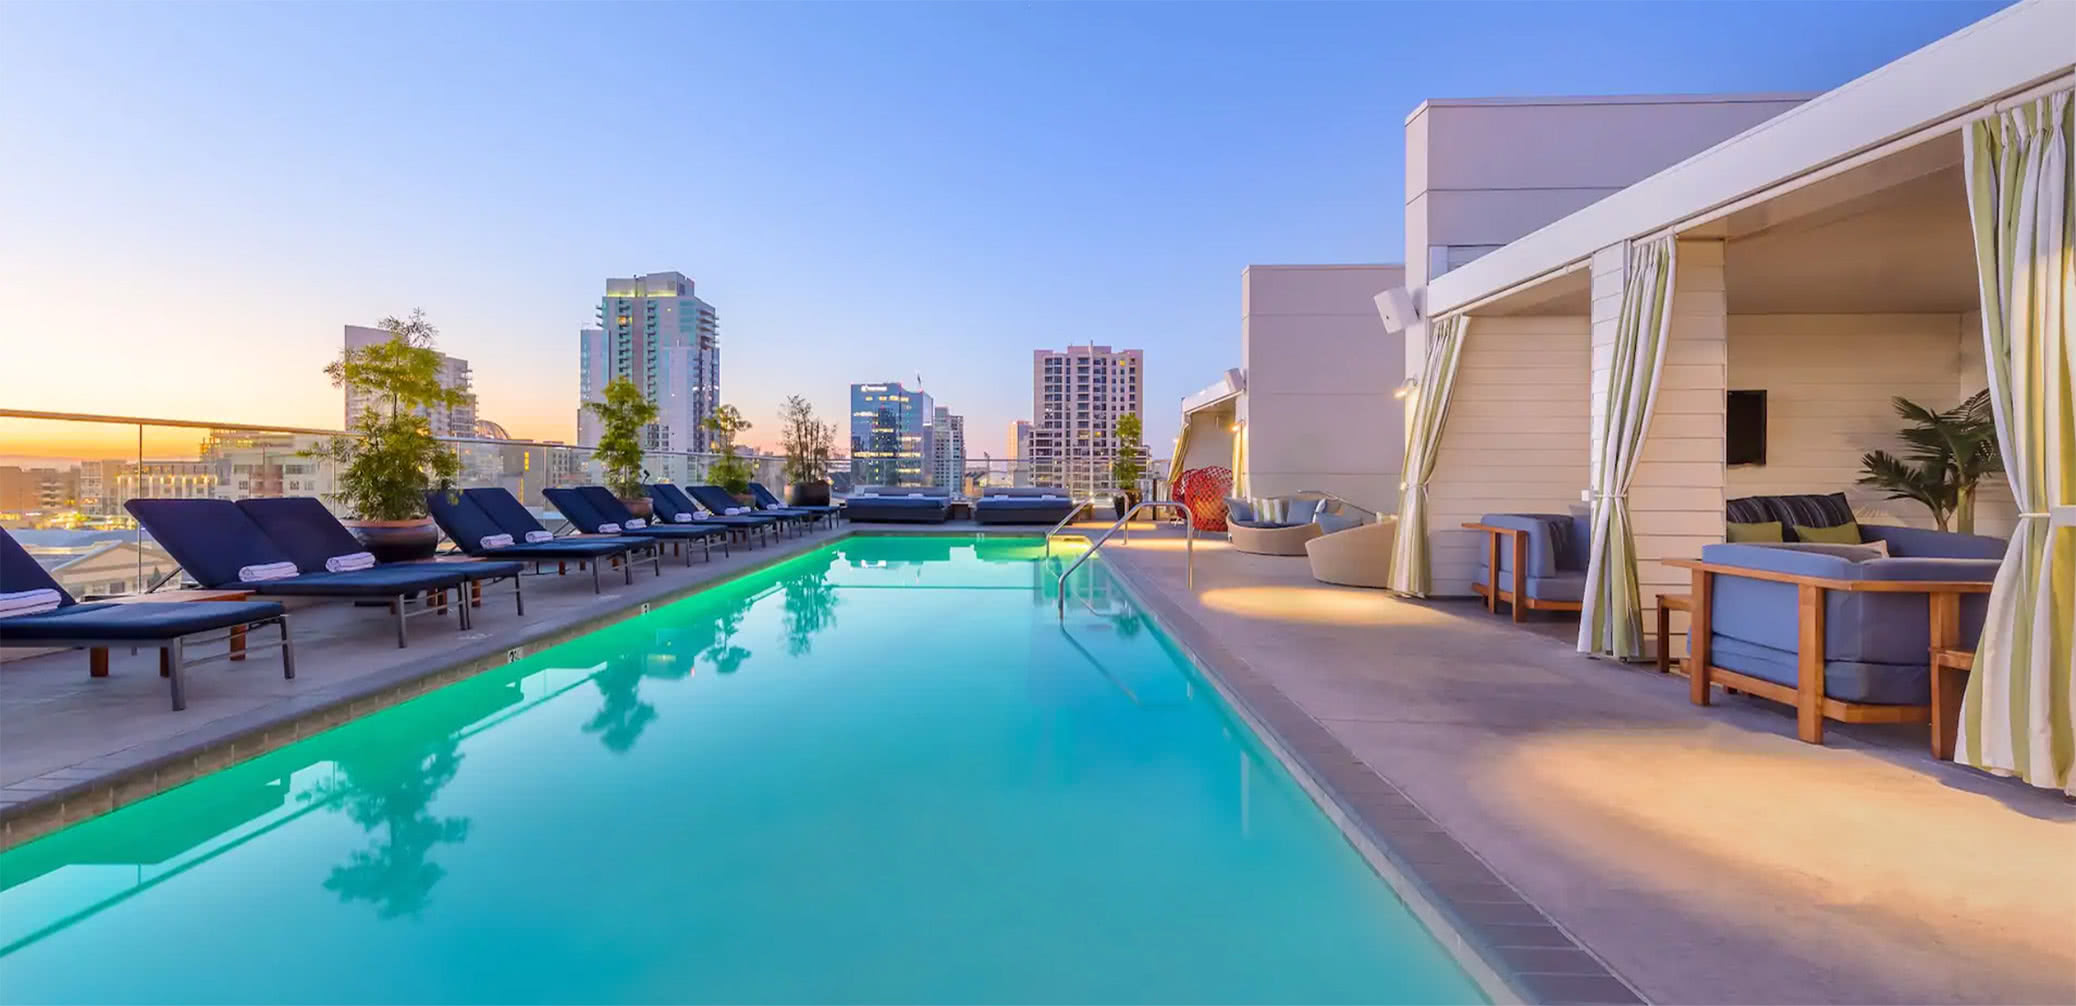 Best Hyatt Hotels In San Diego: Manchester Grand Vs Regency Vs Andaz